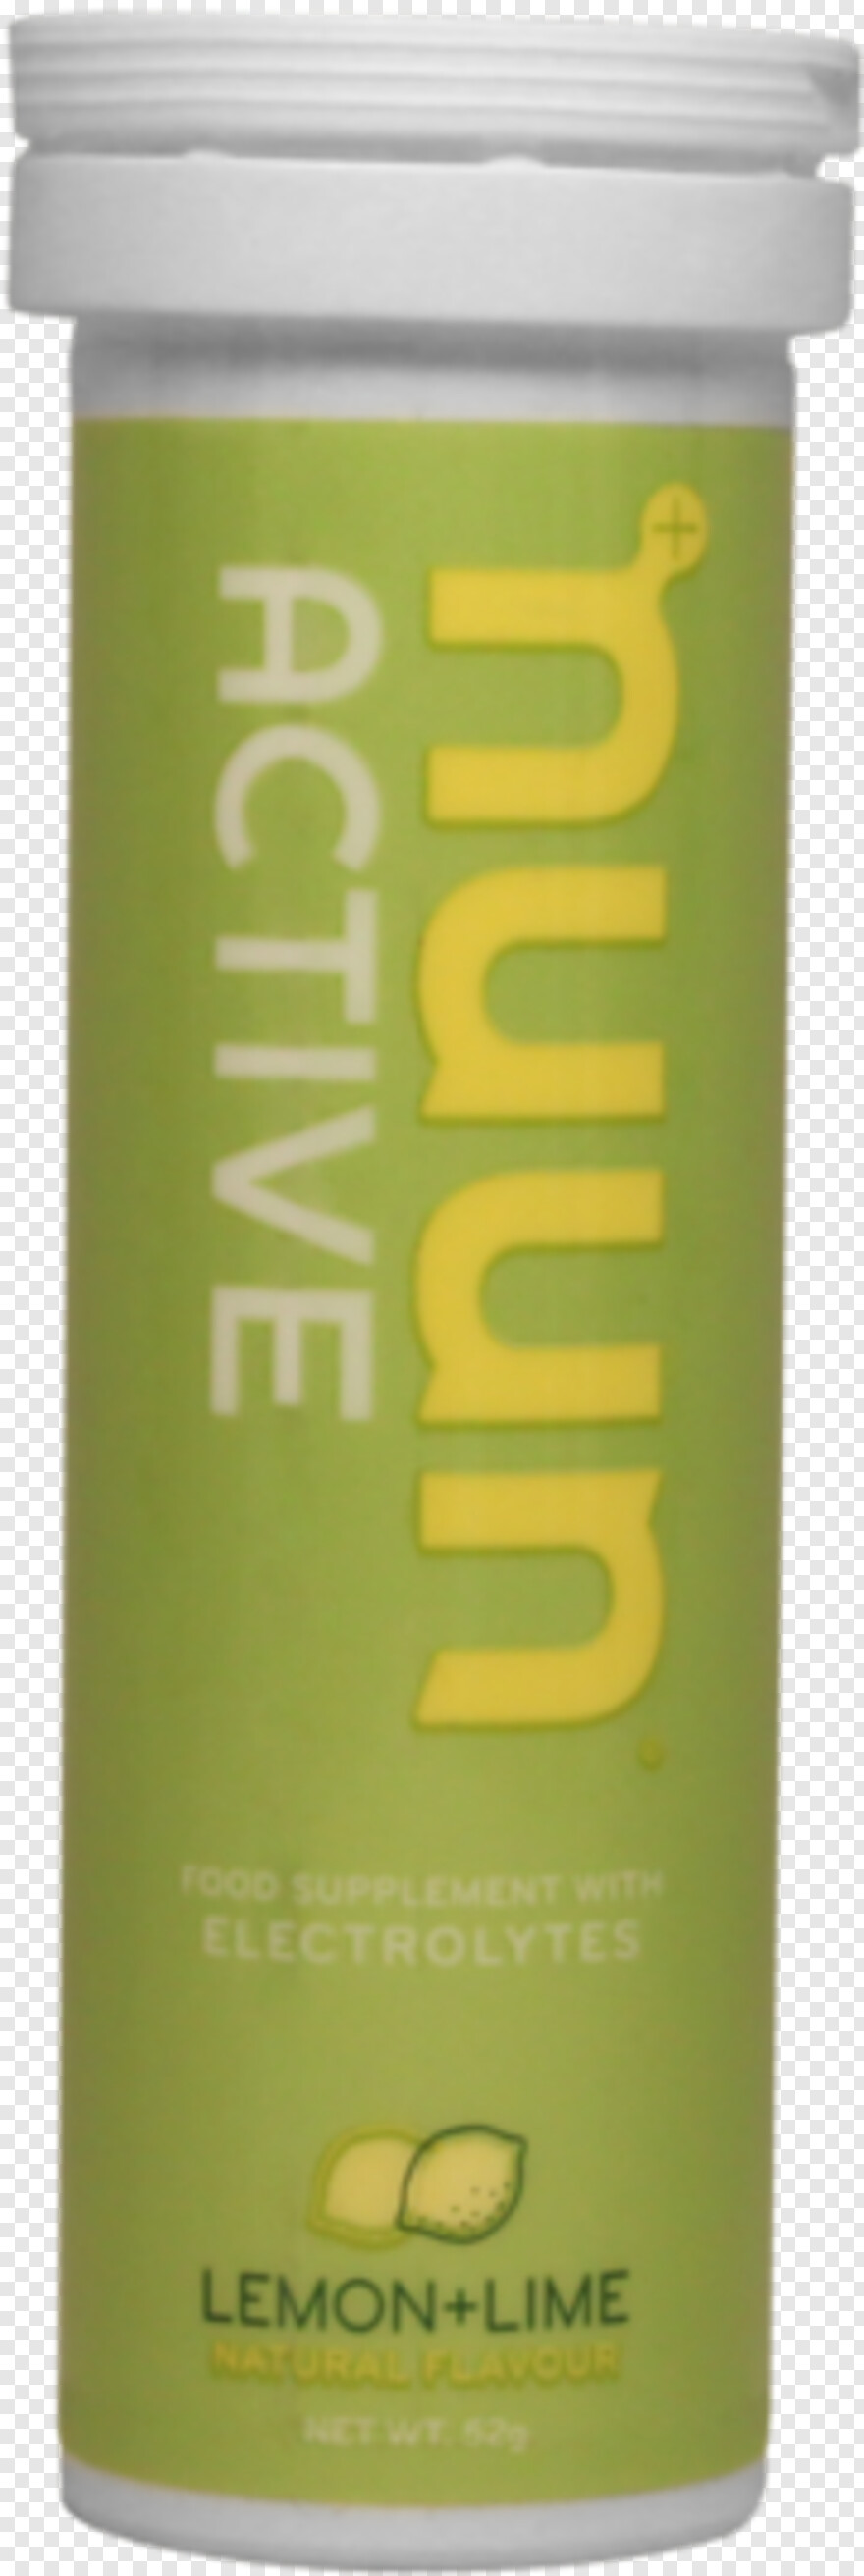 lime-juice # 573390